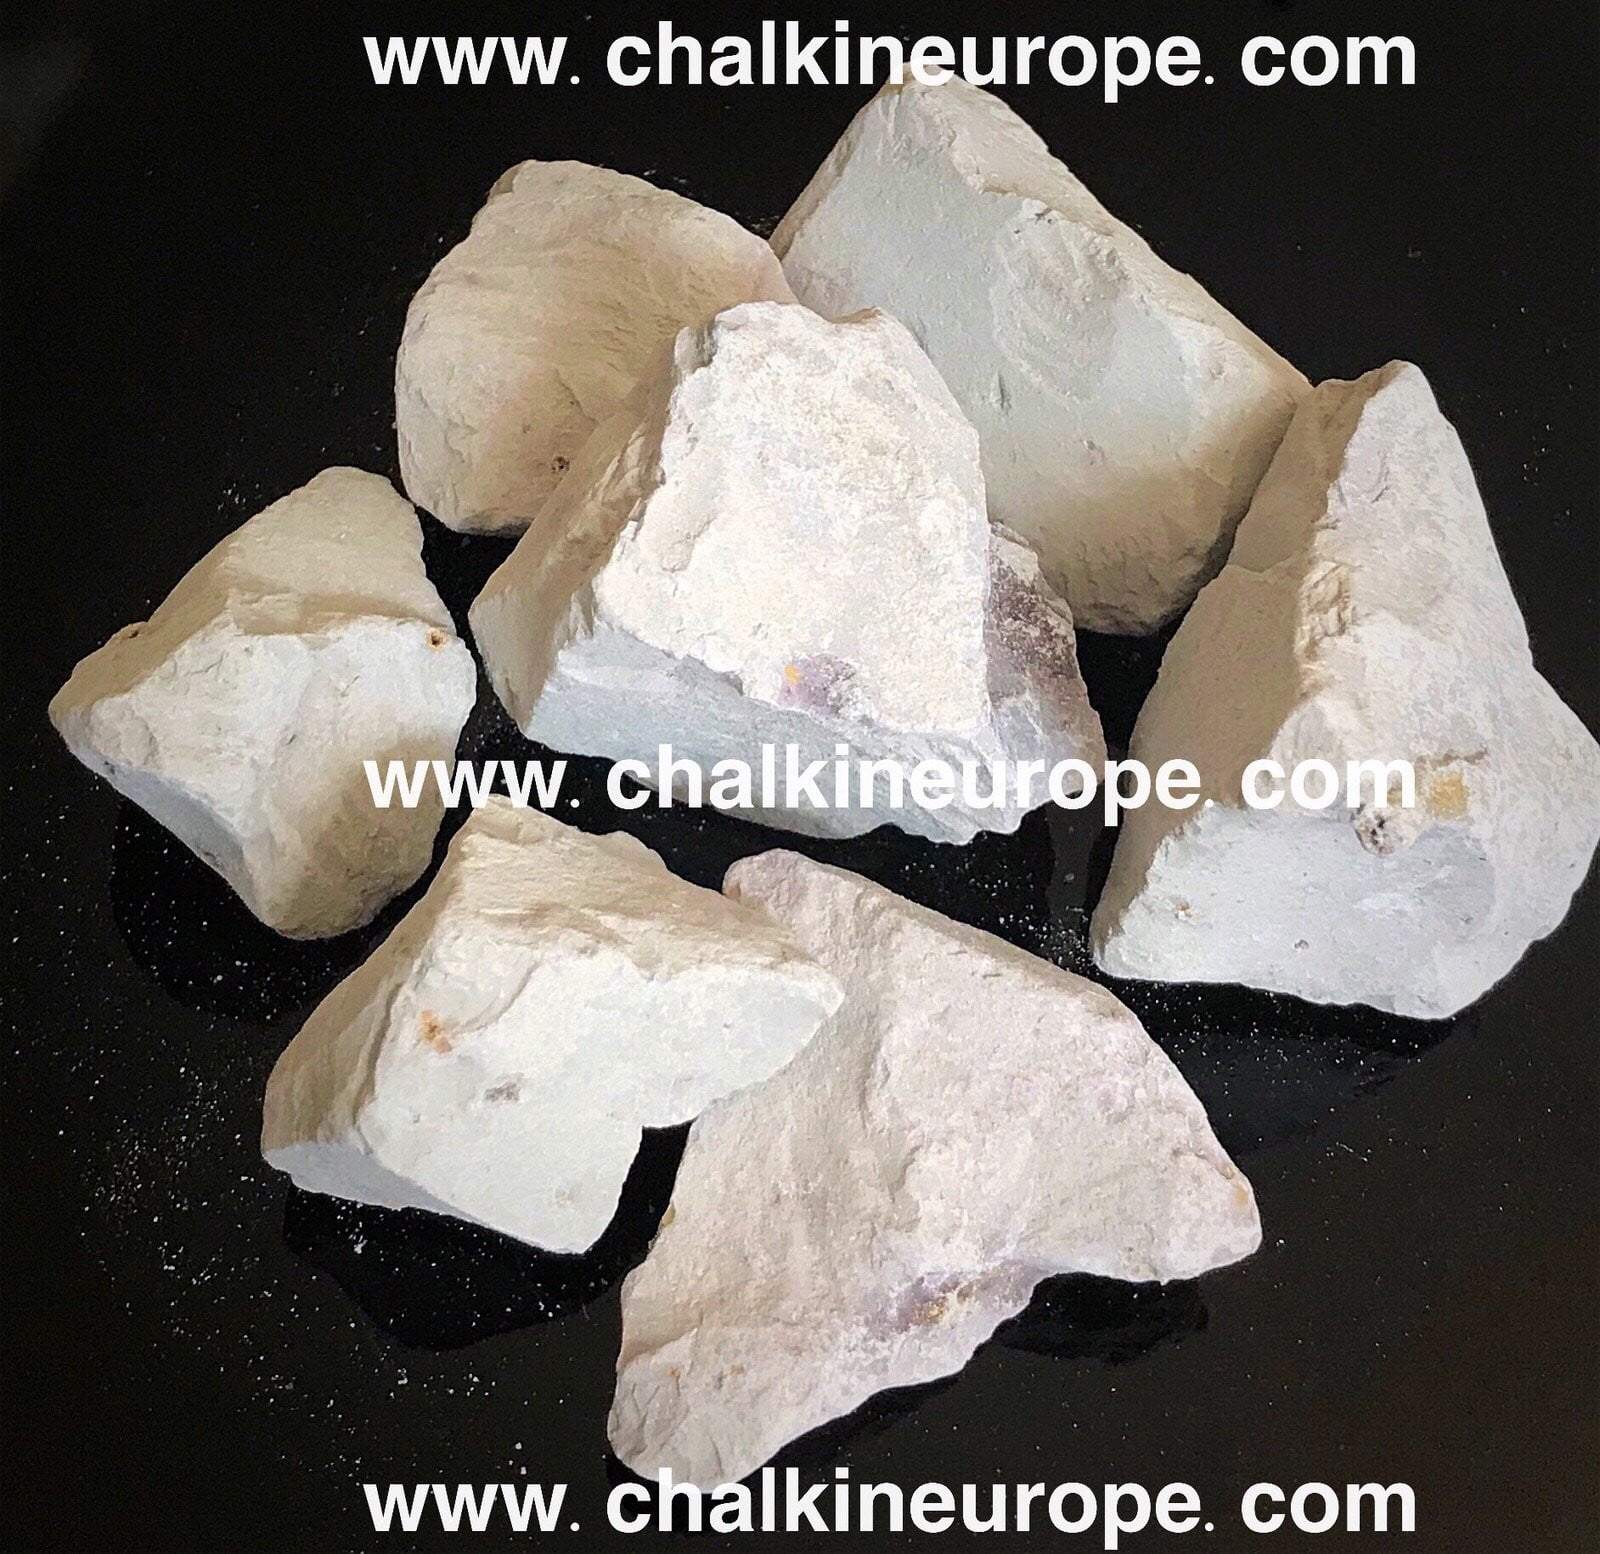 Half Roasted Nakumatt Clay - Chalkineurope